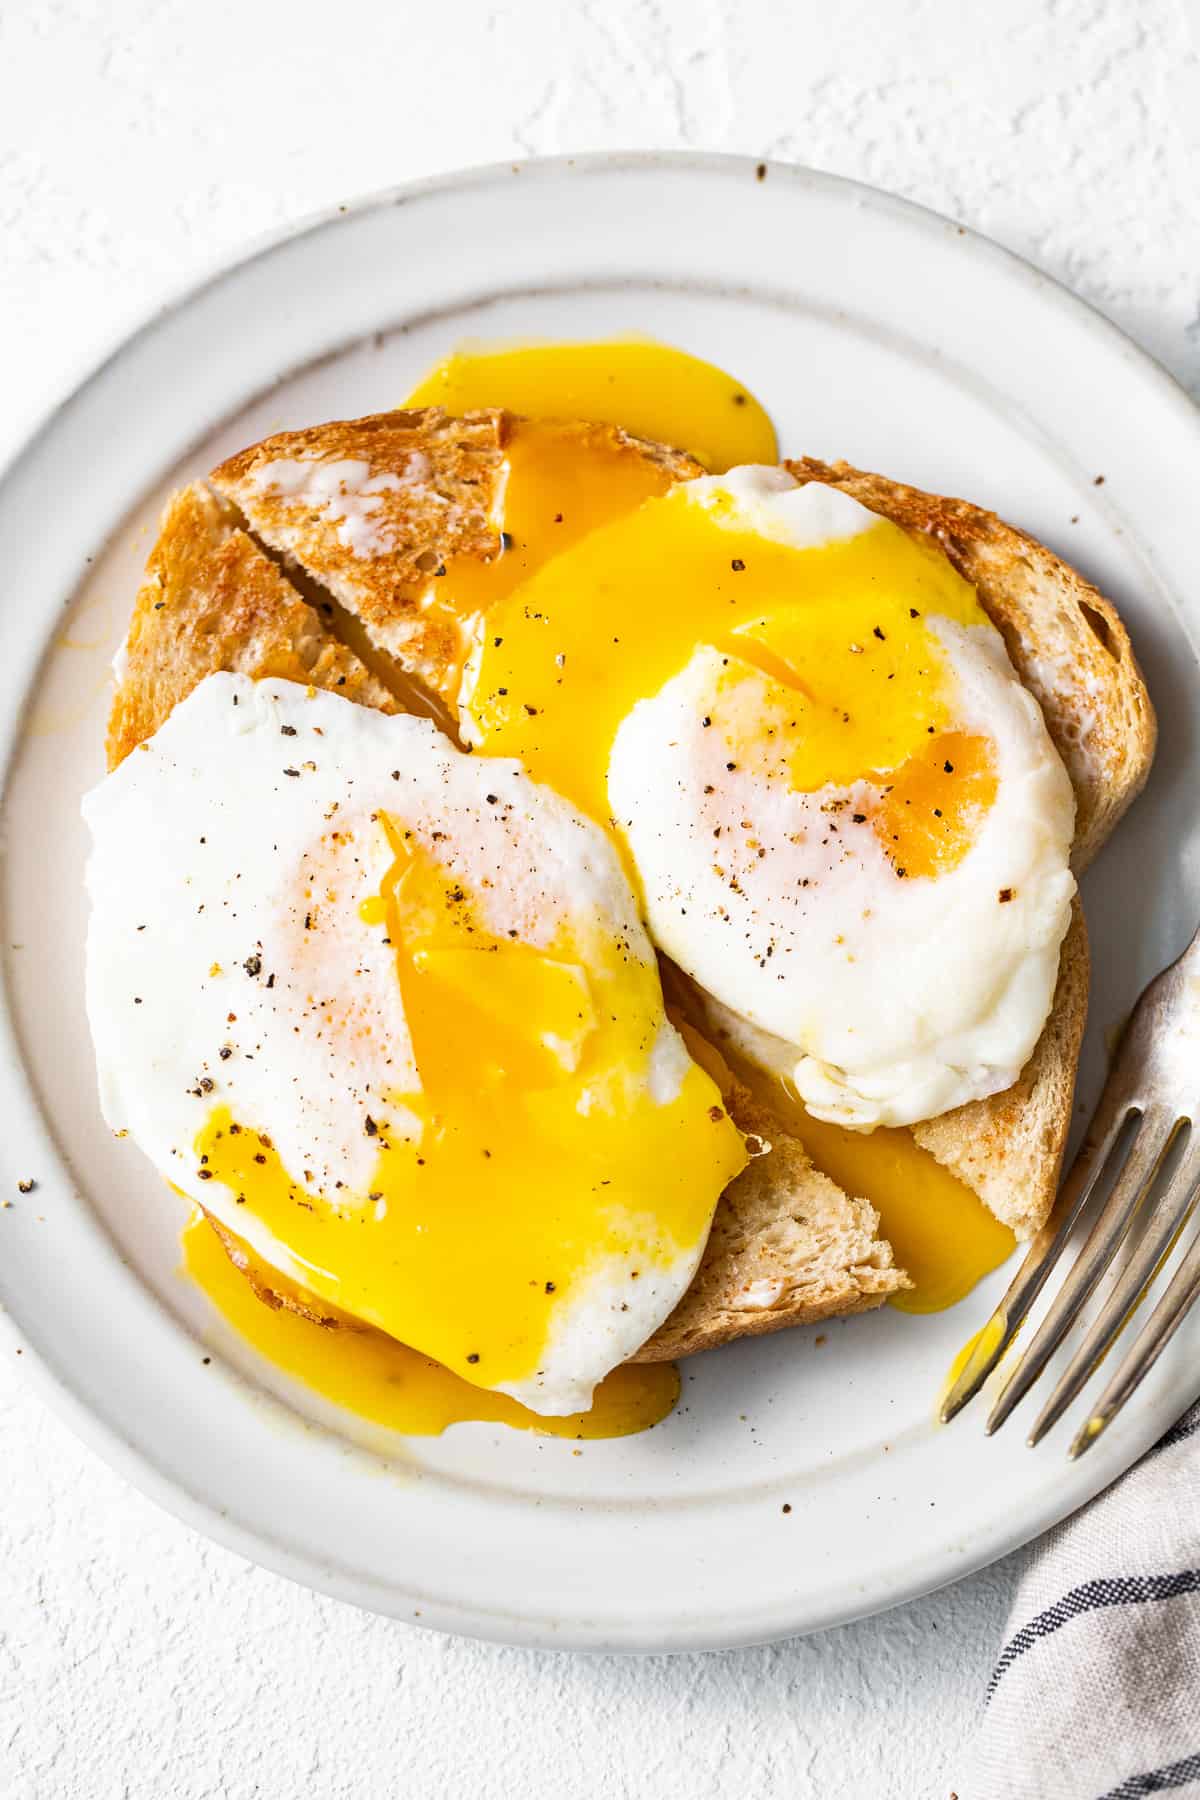 بیش از تخم مرغ آسان روی نان تست سرو می شود.